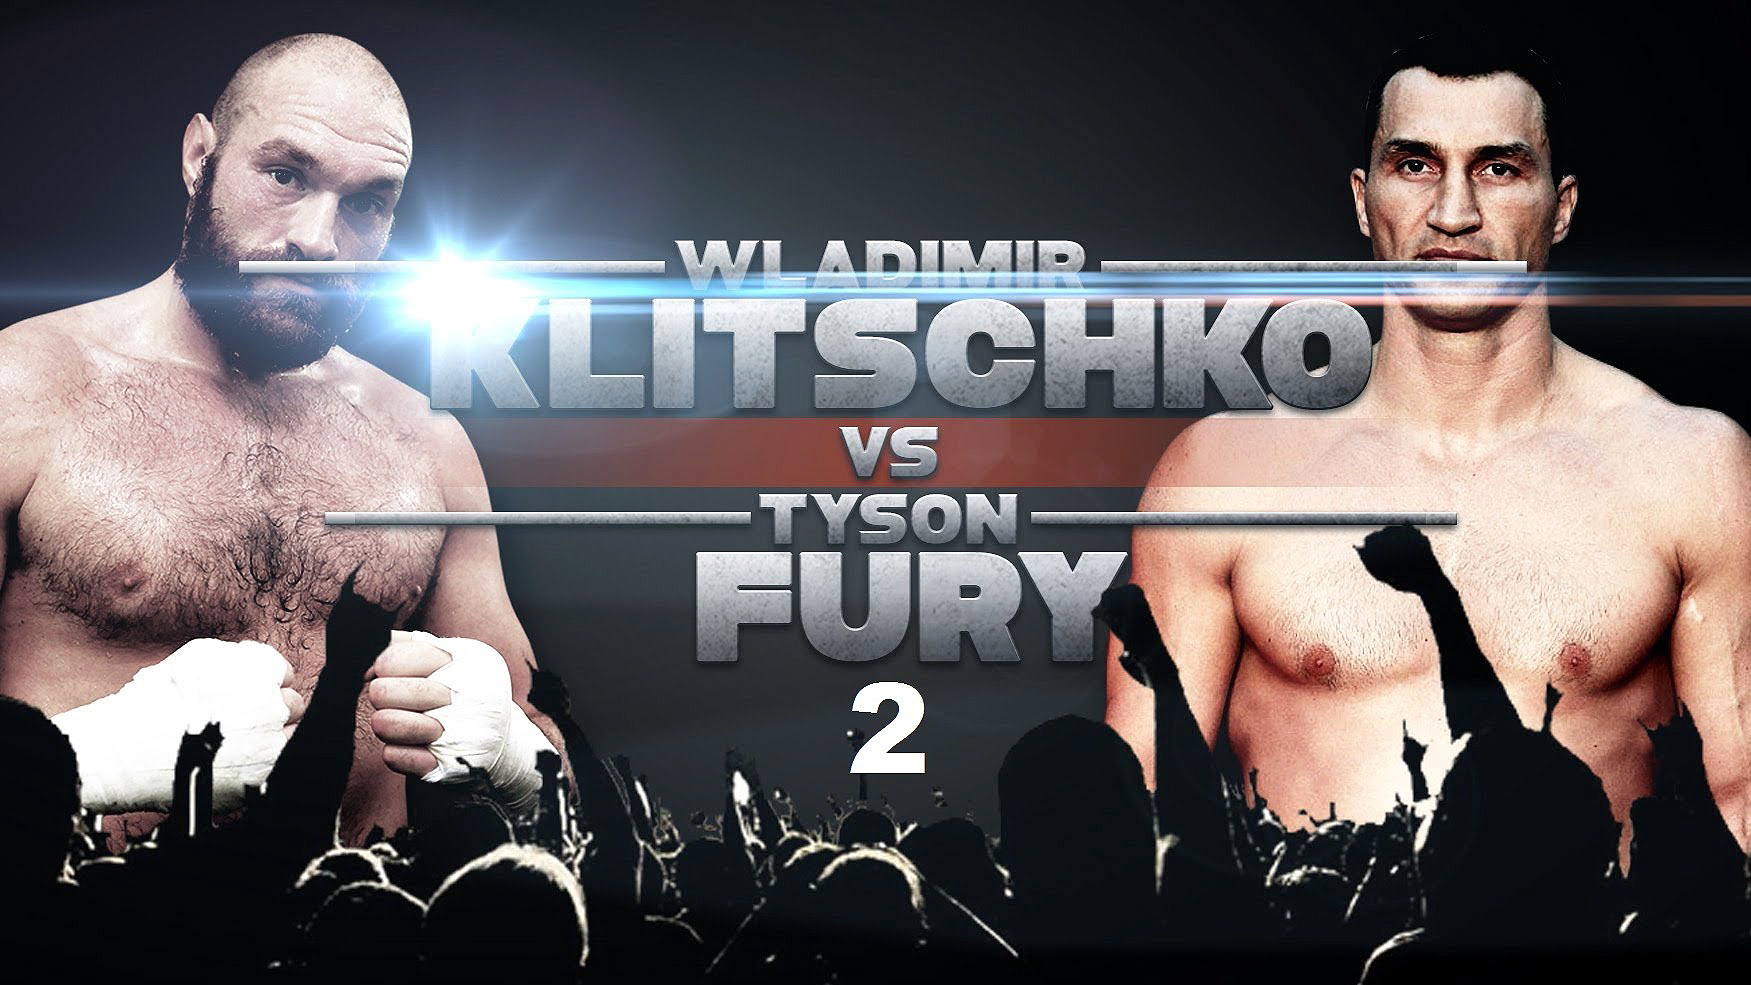 Fury-Klitschko Rematch Postponed